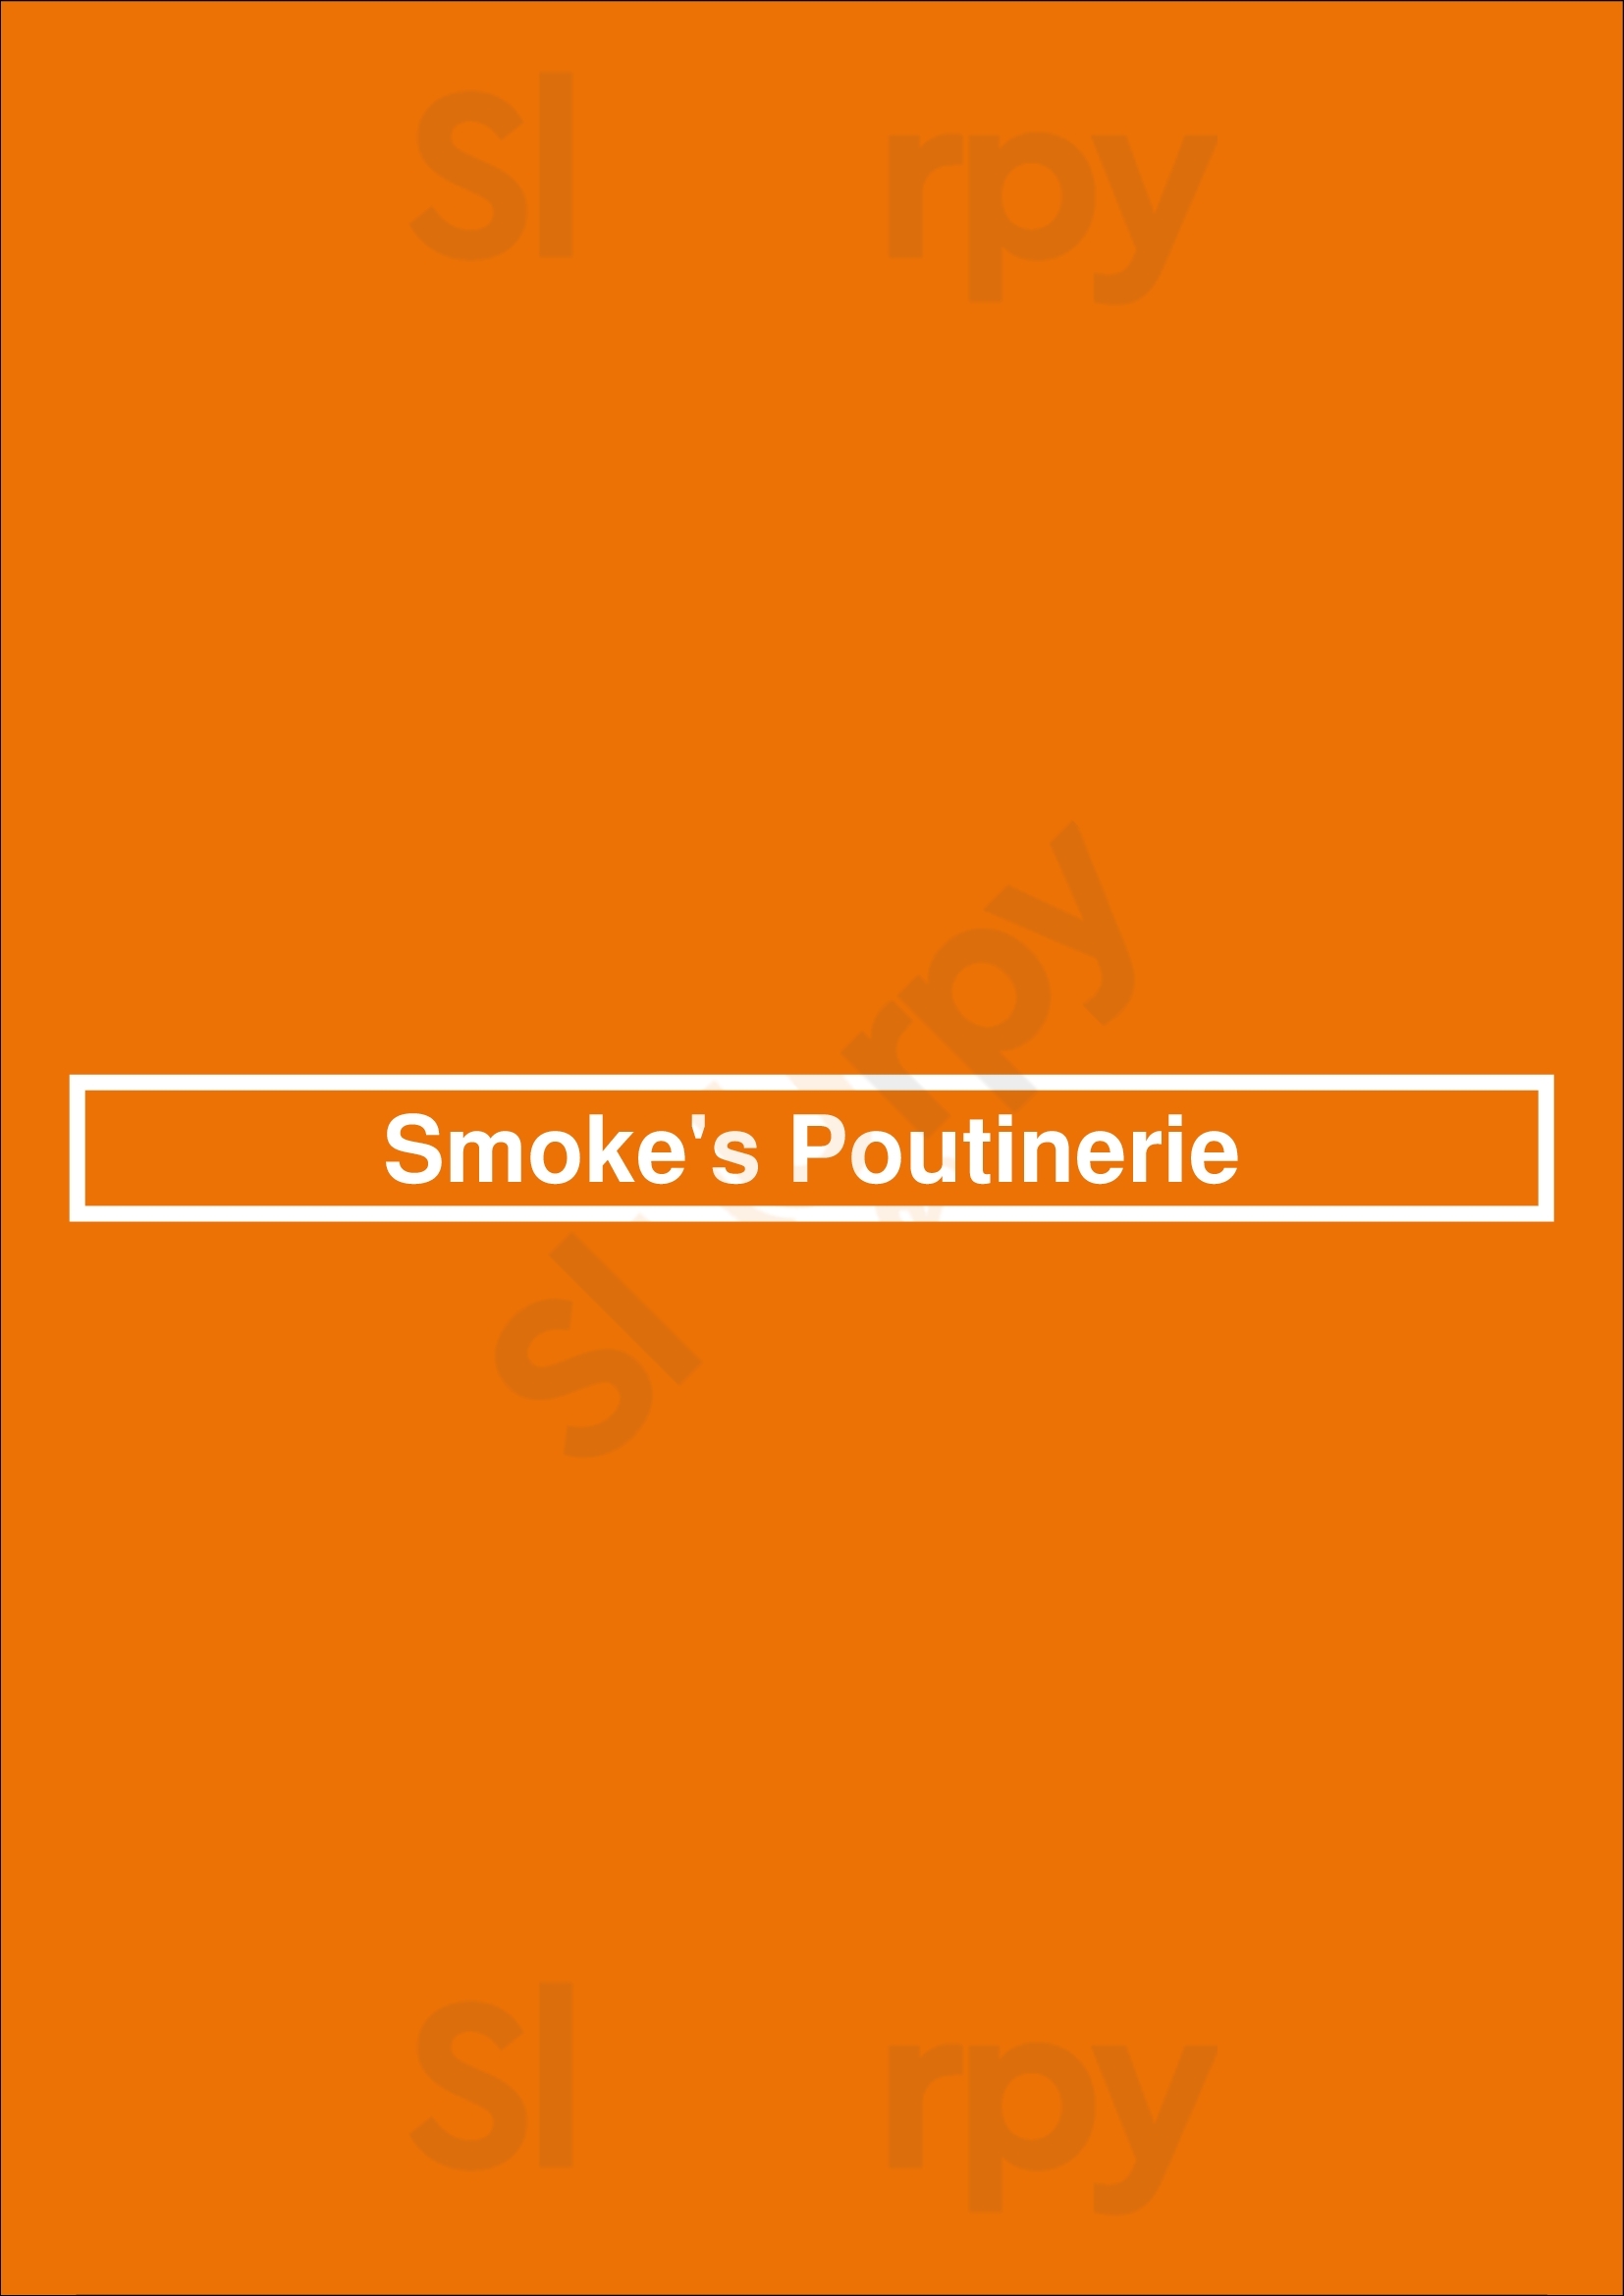 Smoke's Poutinerie London Menu - 1